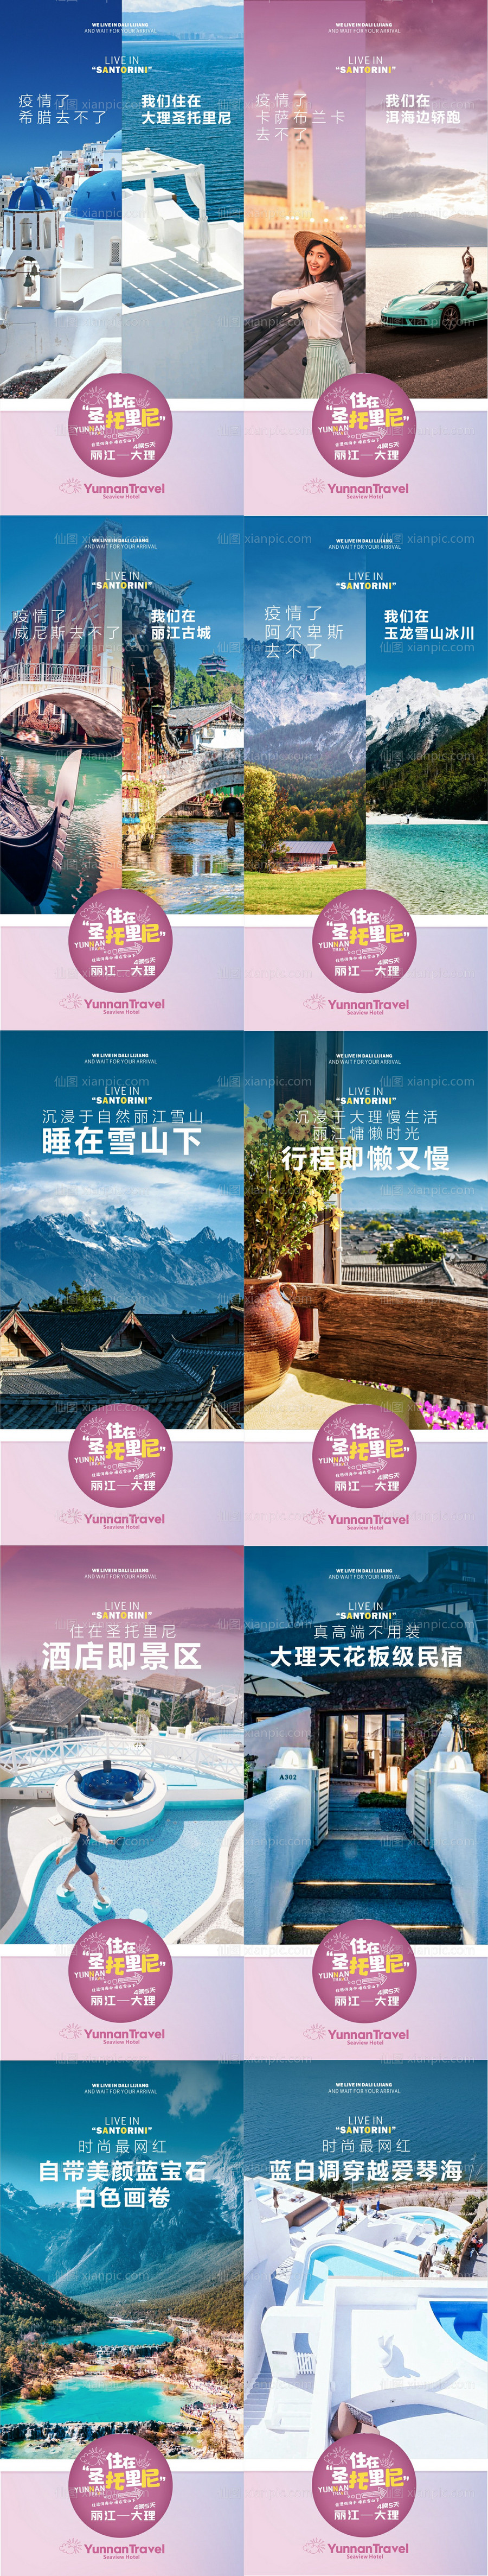 素材乐-云南旅游对比系列海报